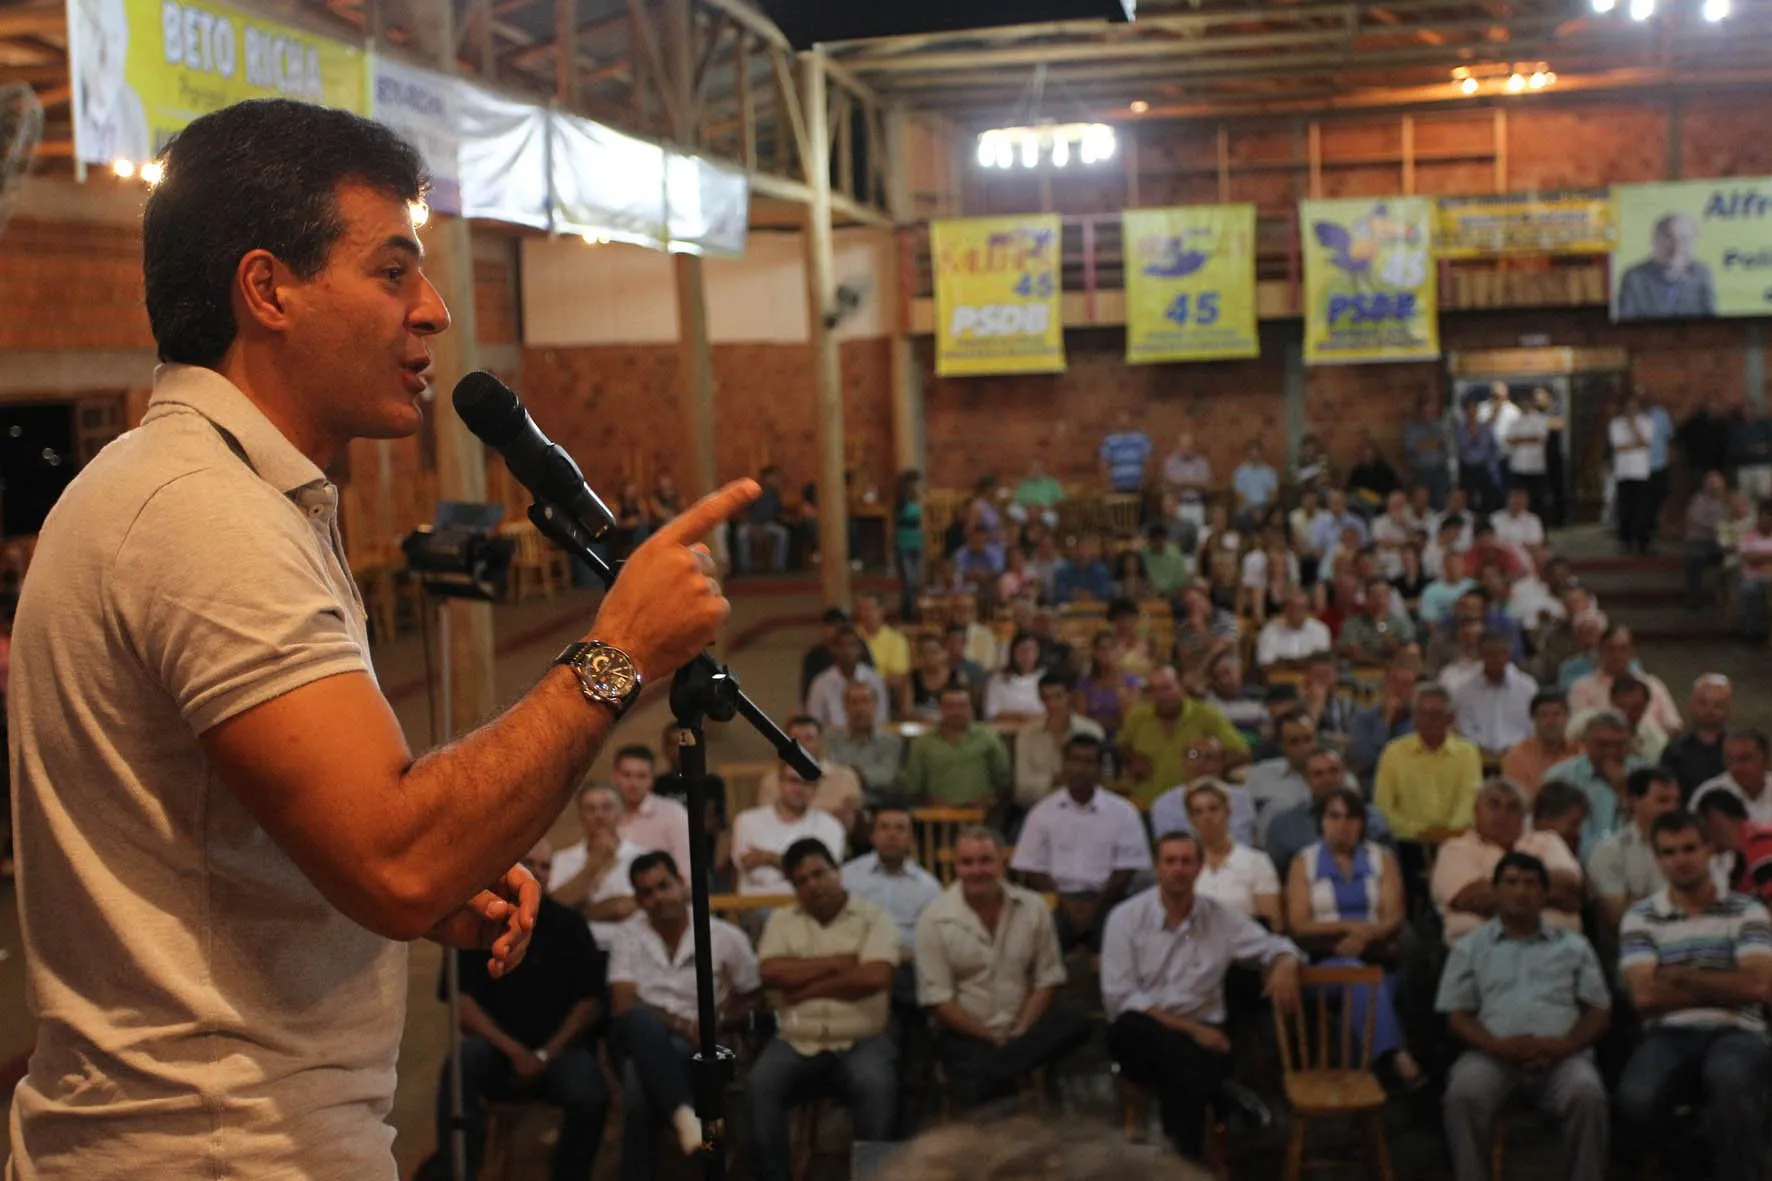 Em Cascavel, Beto participou de encontro do PSDB de apoio a sua pré-candidatura, que reuniu mais de 100 lideranças políticas da região